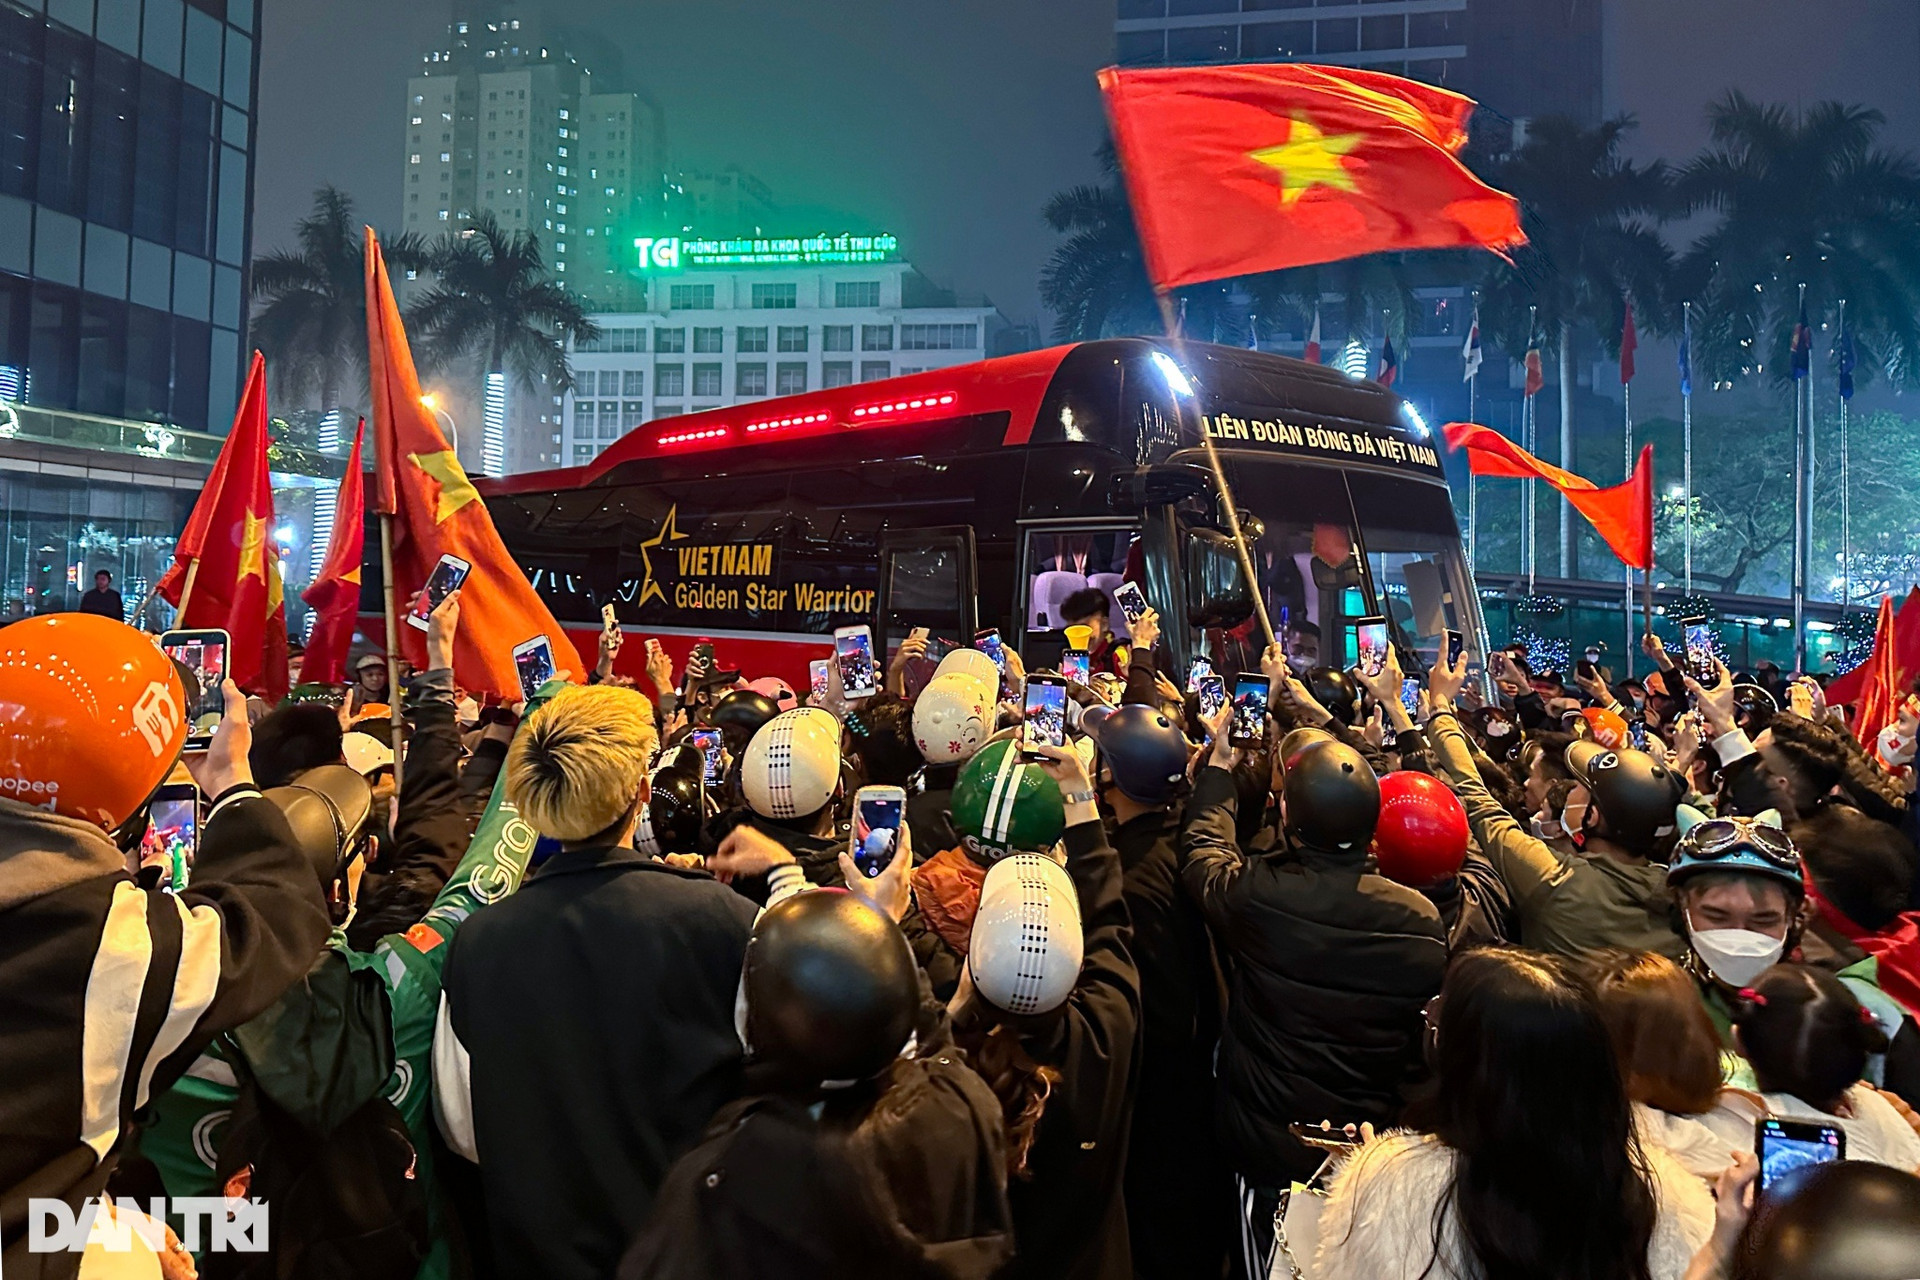 CĐV vây kín xe buýt, vẫy cờ chúc mừng chiến thắng của tuyển Việt Nam - 11